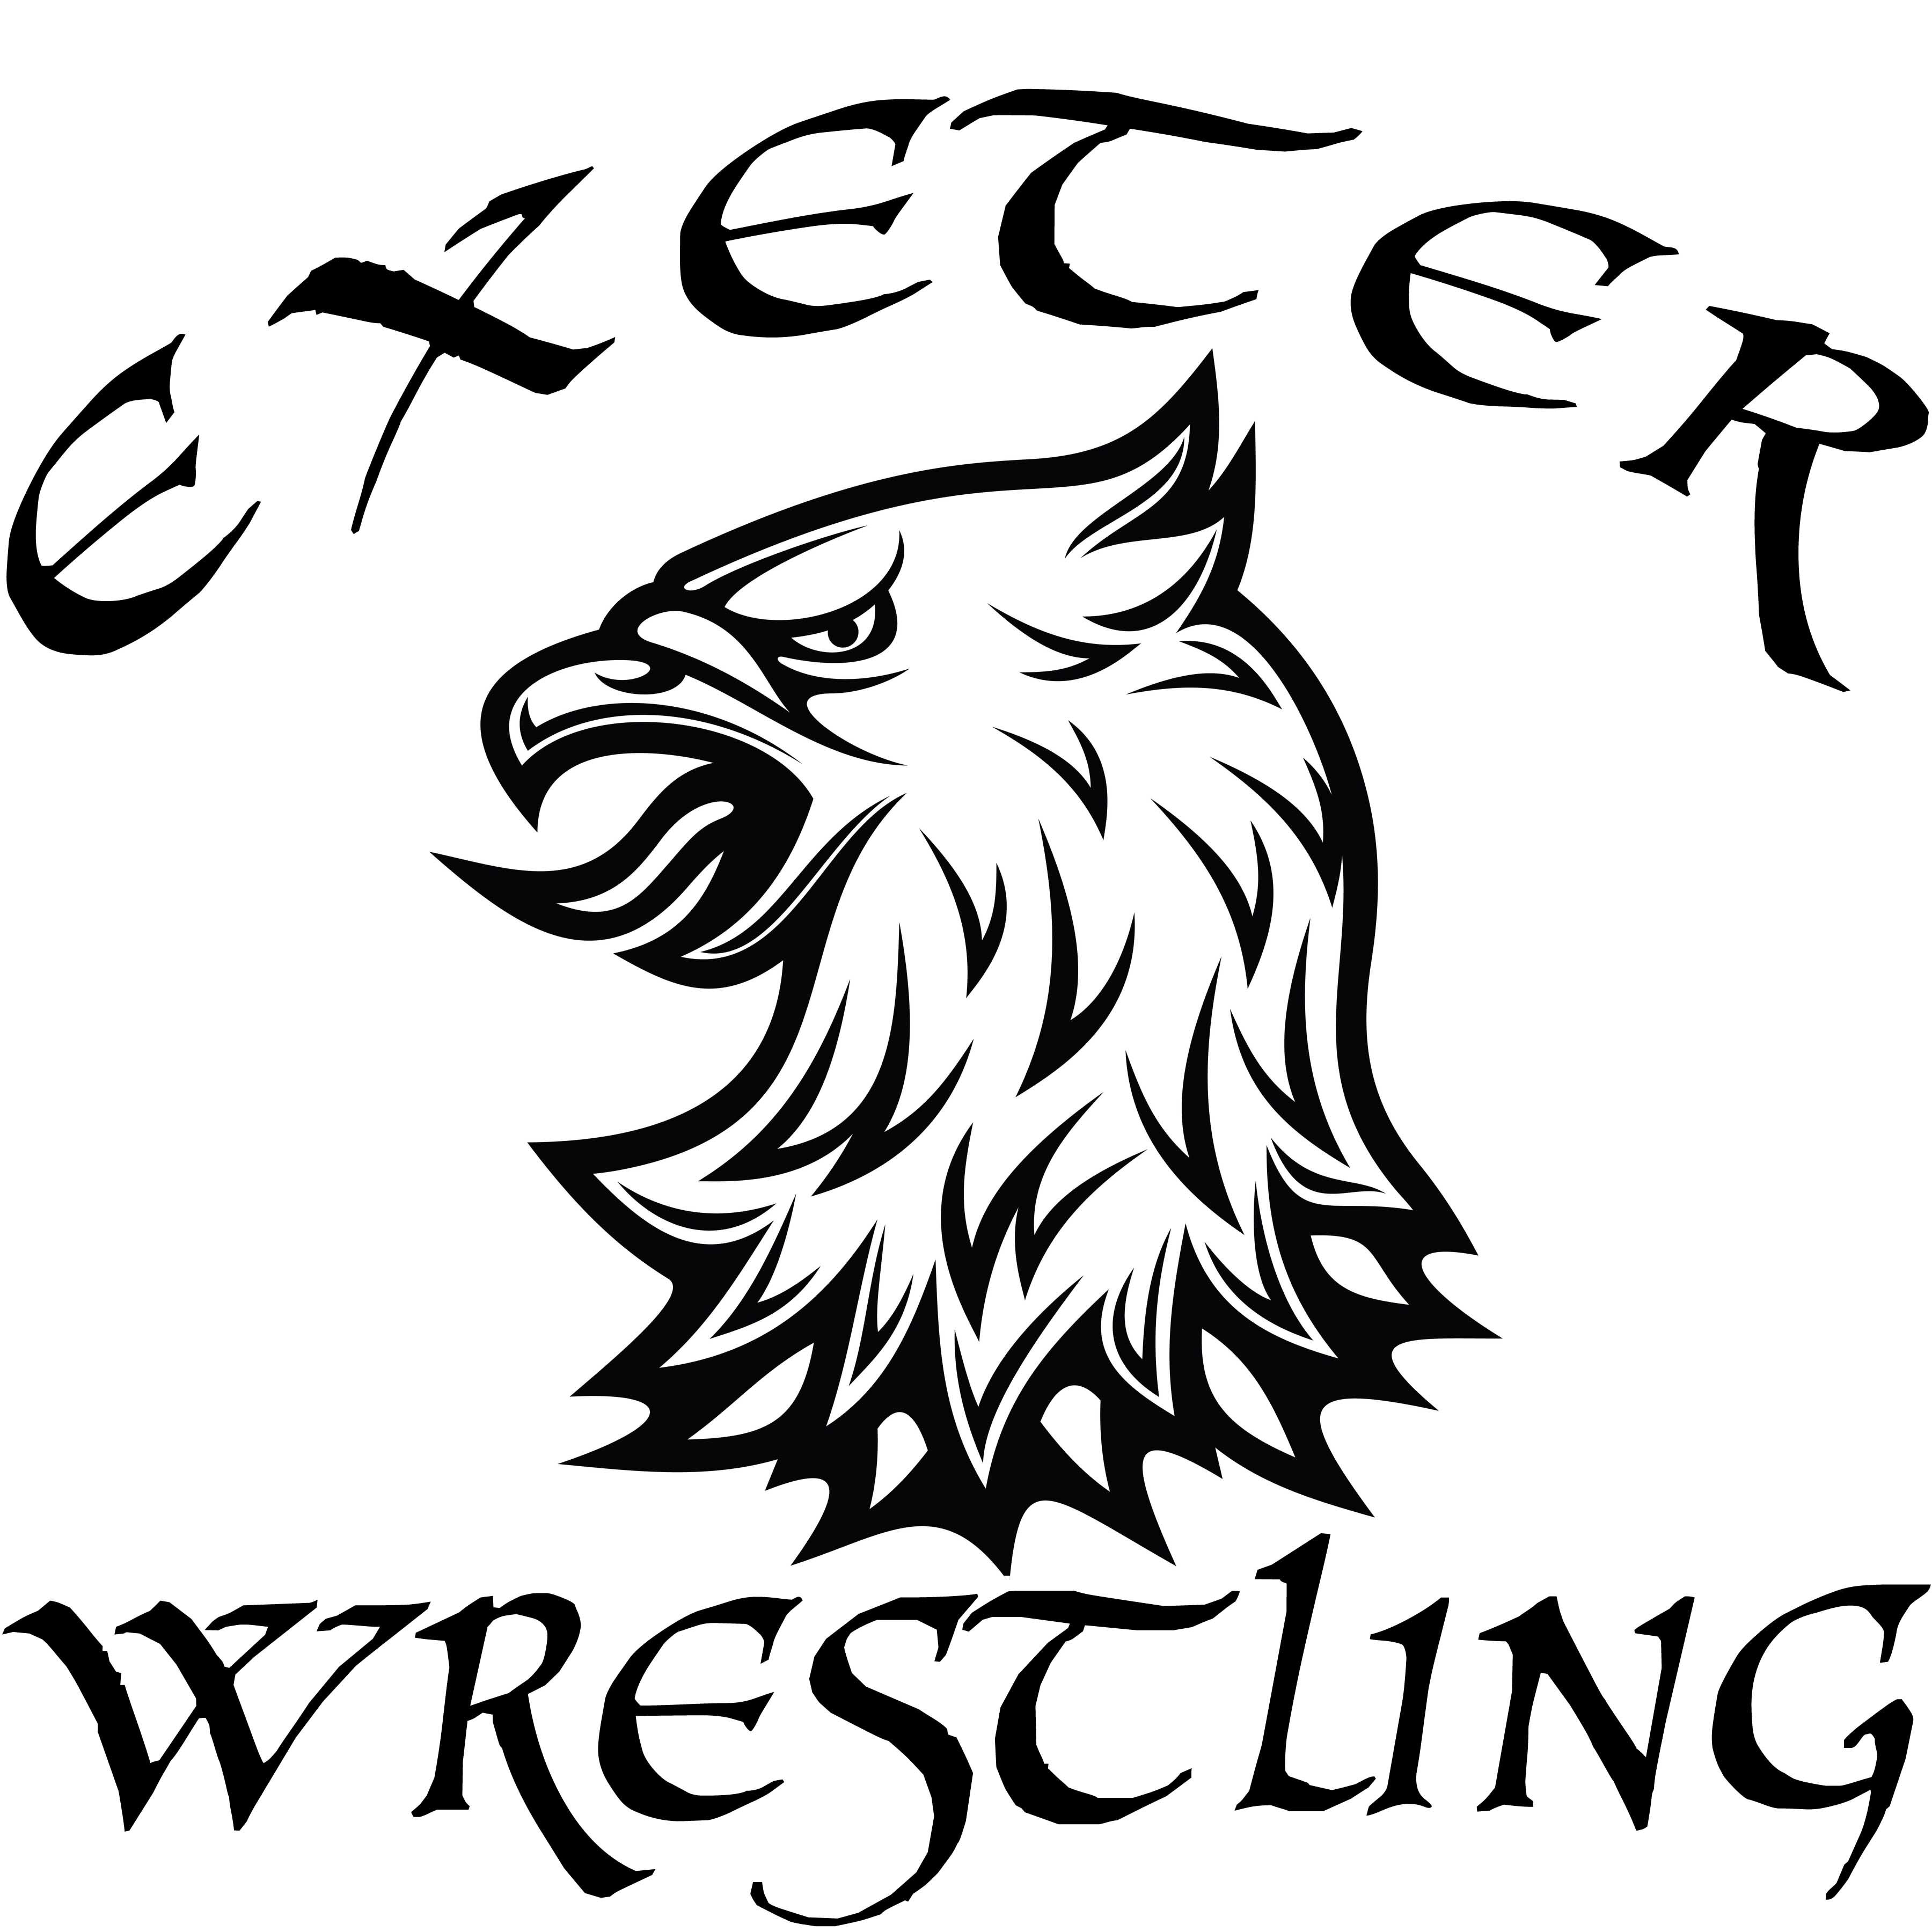 Exeter Wrestling